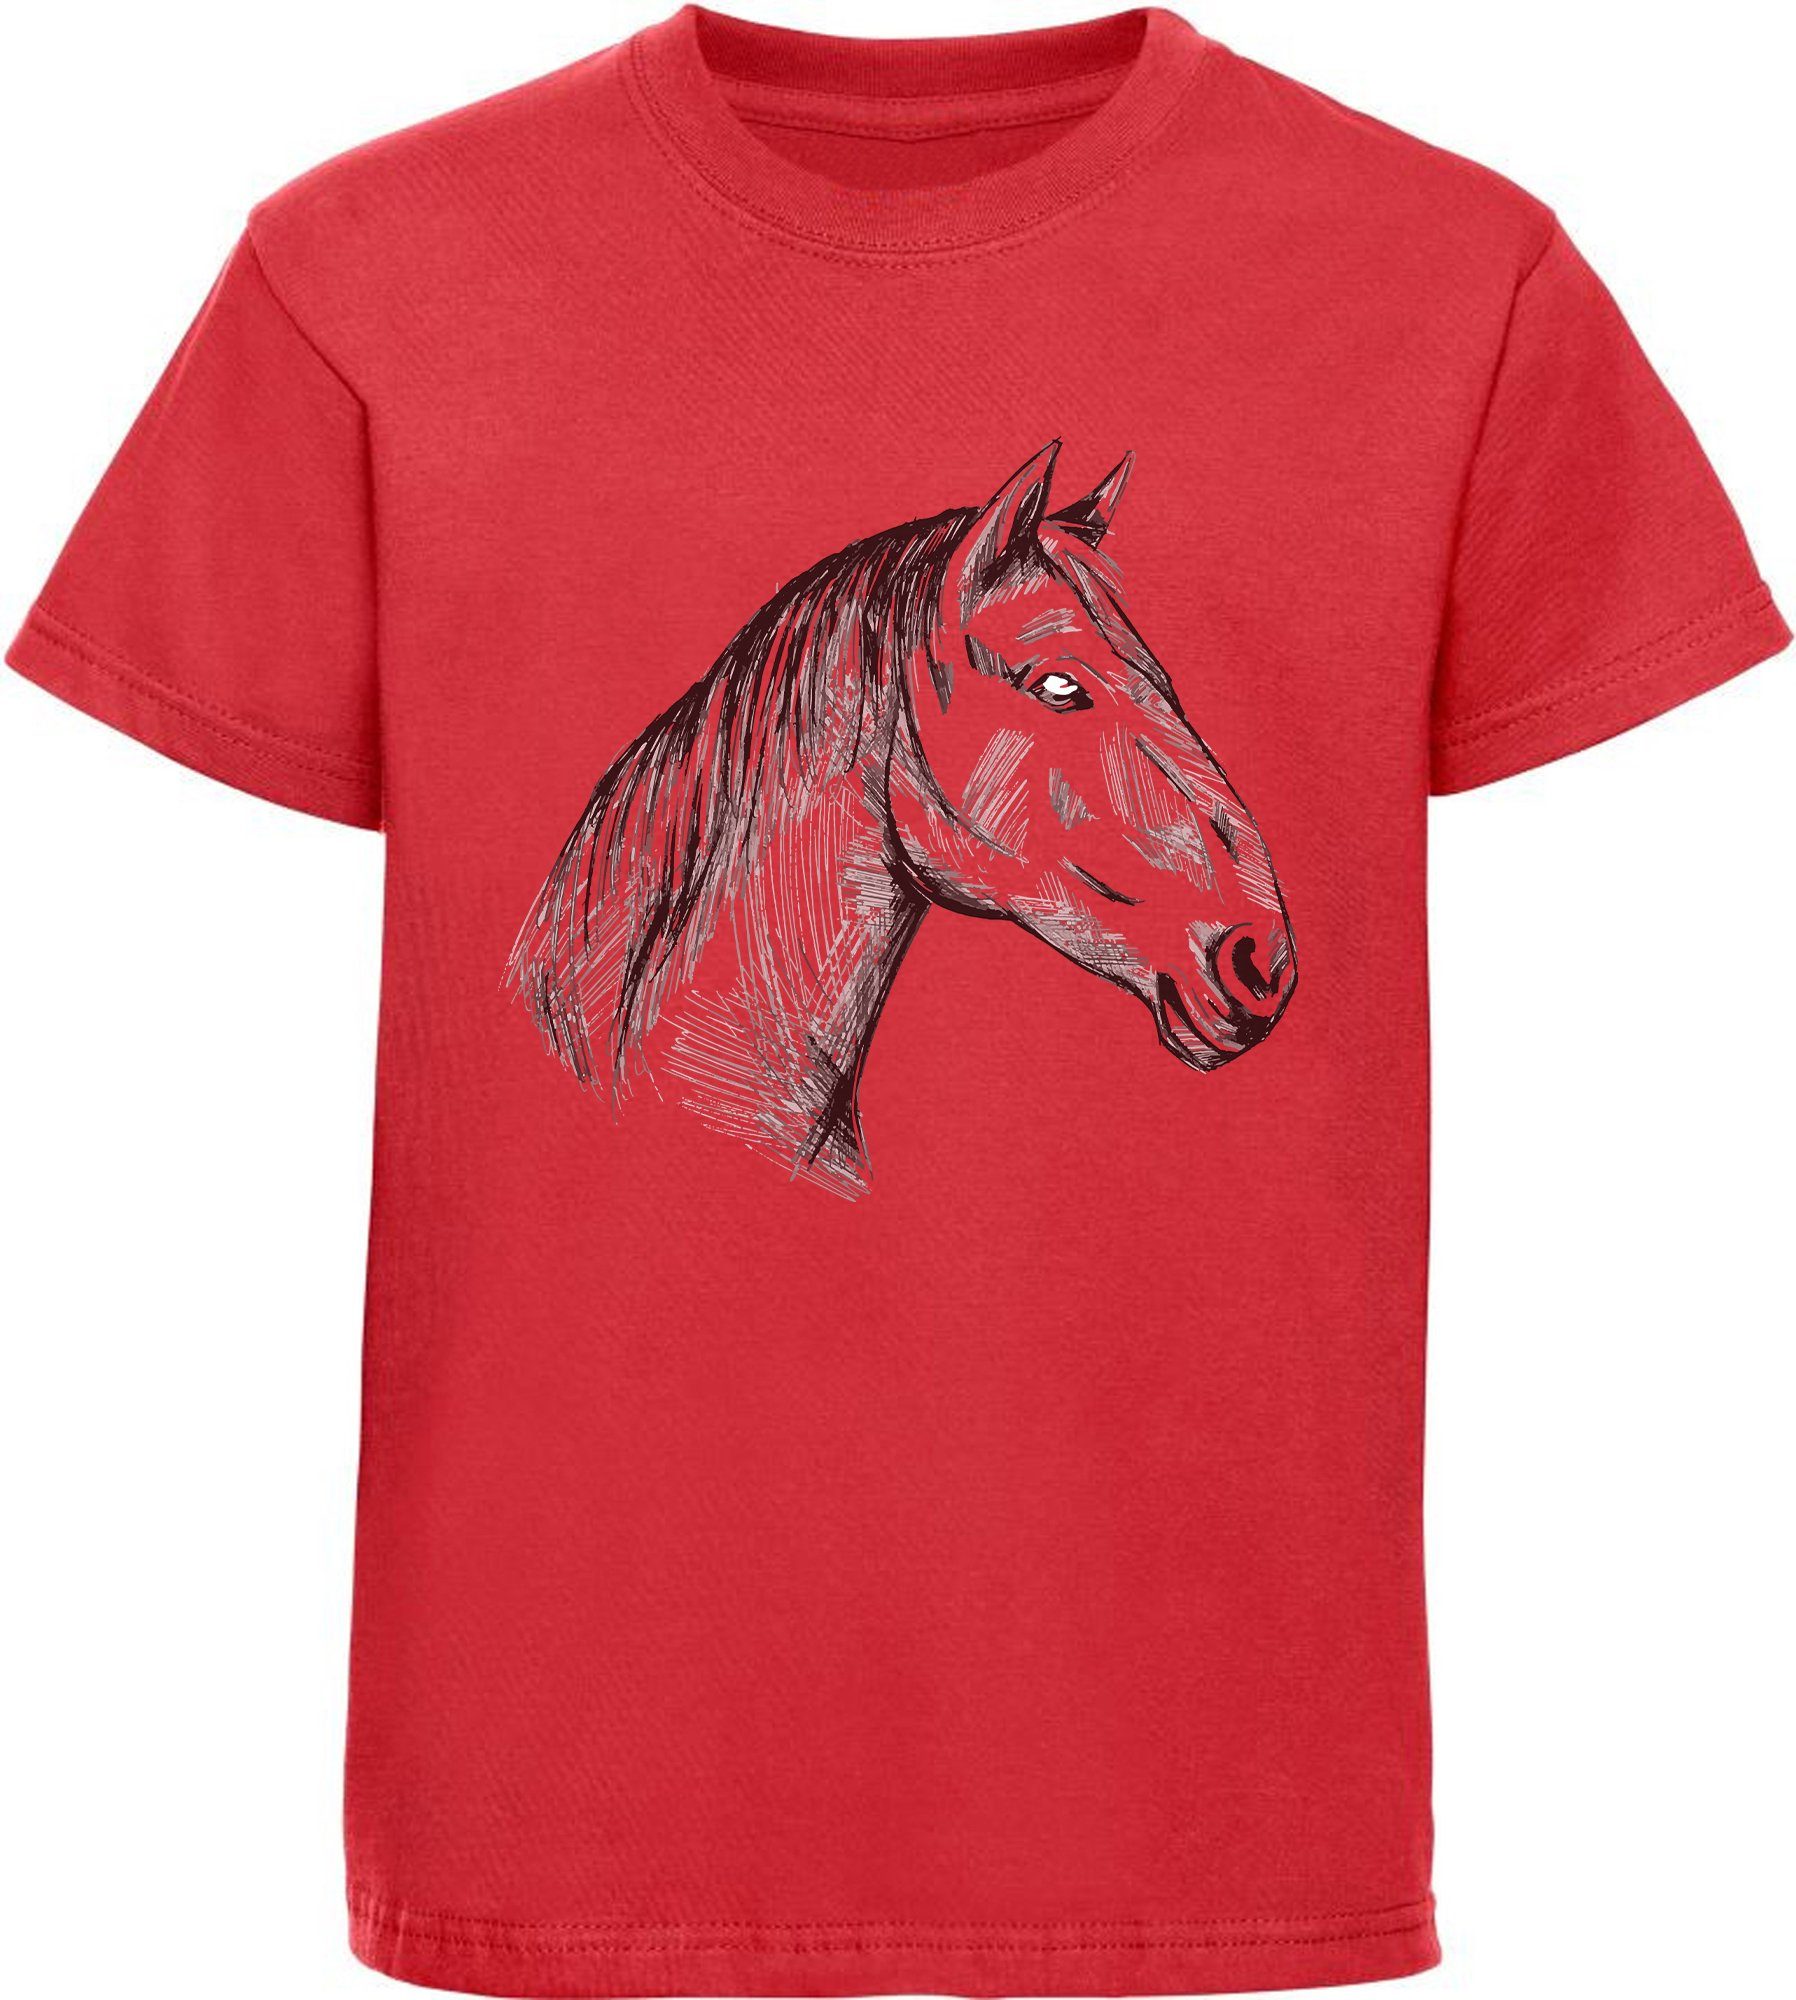 Print-Shirt T-Shirt Pferdekopf MyDesign24 i142 gezeichneter Mädchen rot mit bedrucktes Baumwollshirt Aufdruck,